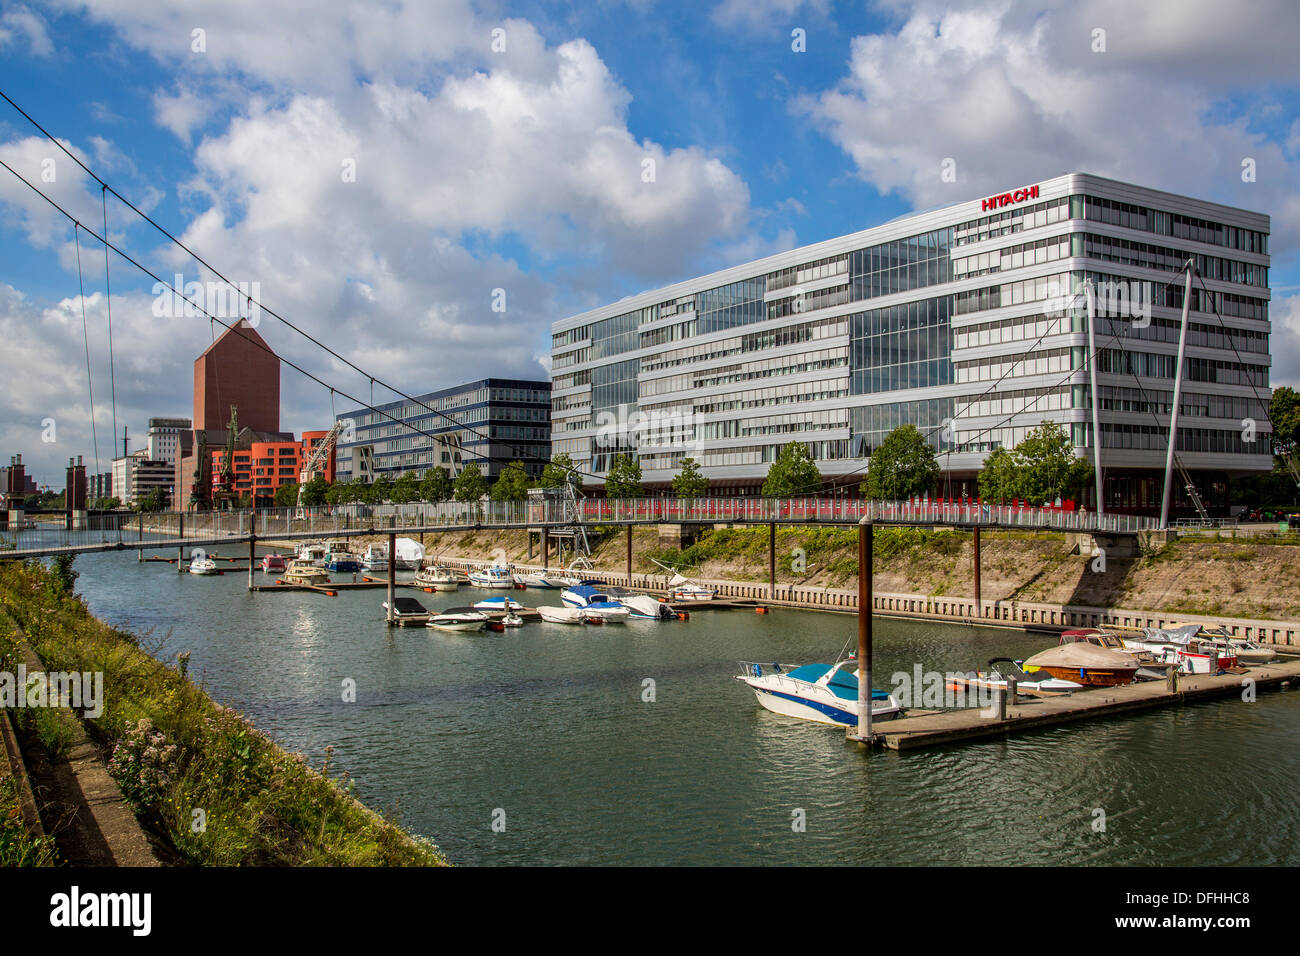 Innenhafen un ex industriali porta terrestre nella città di Duisburg. Oggi un business e leisure area intorno al bacino portuale. Foto Stock